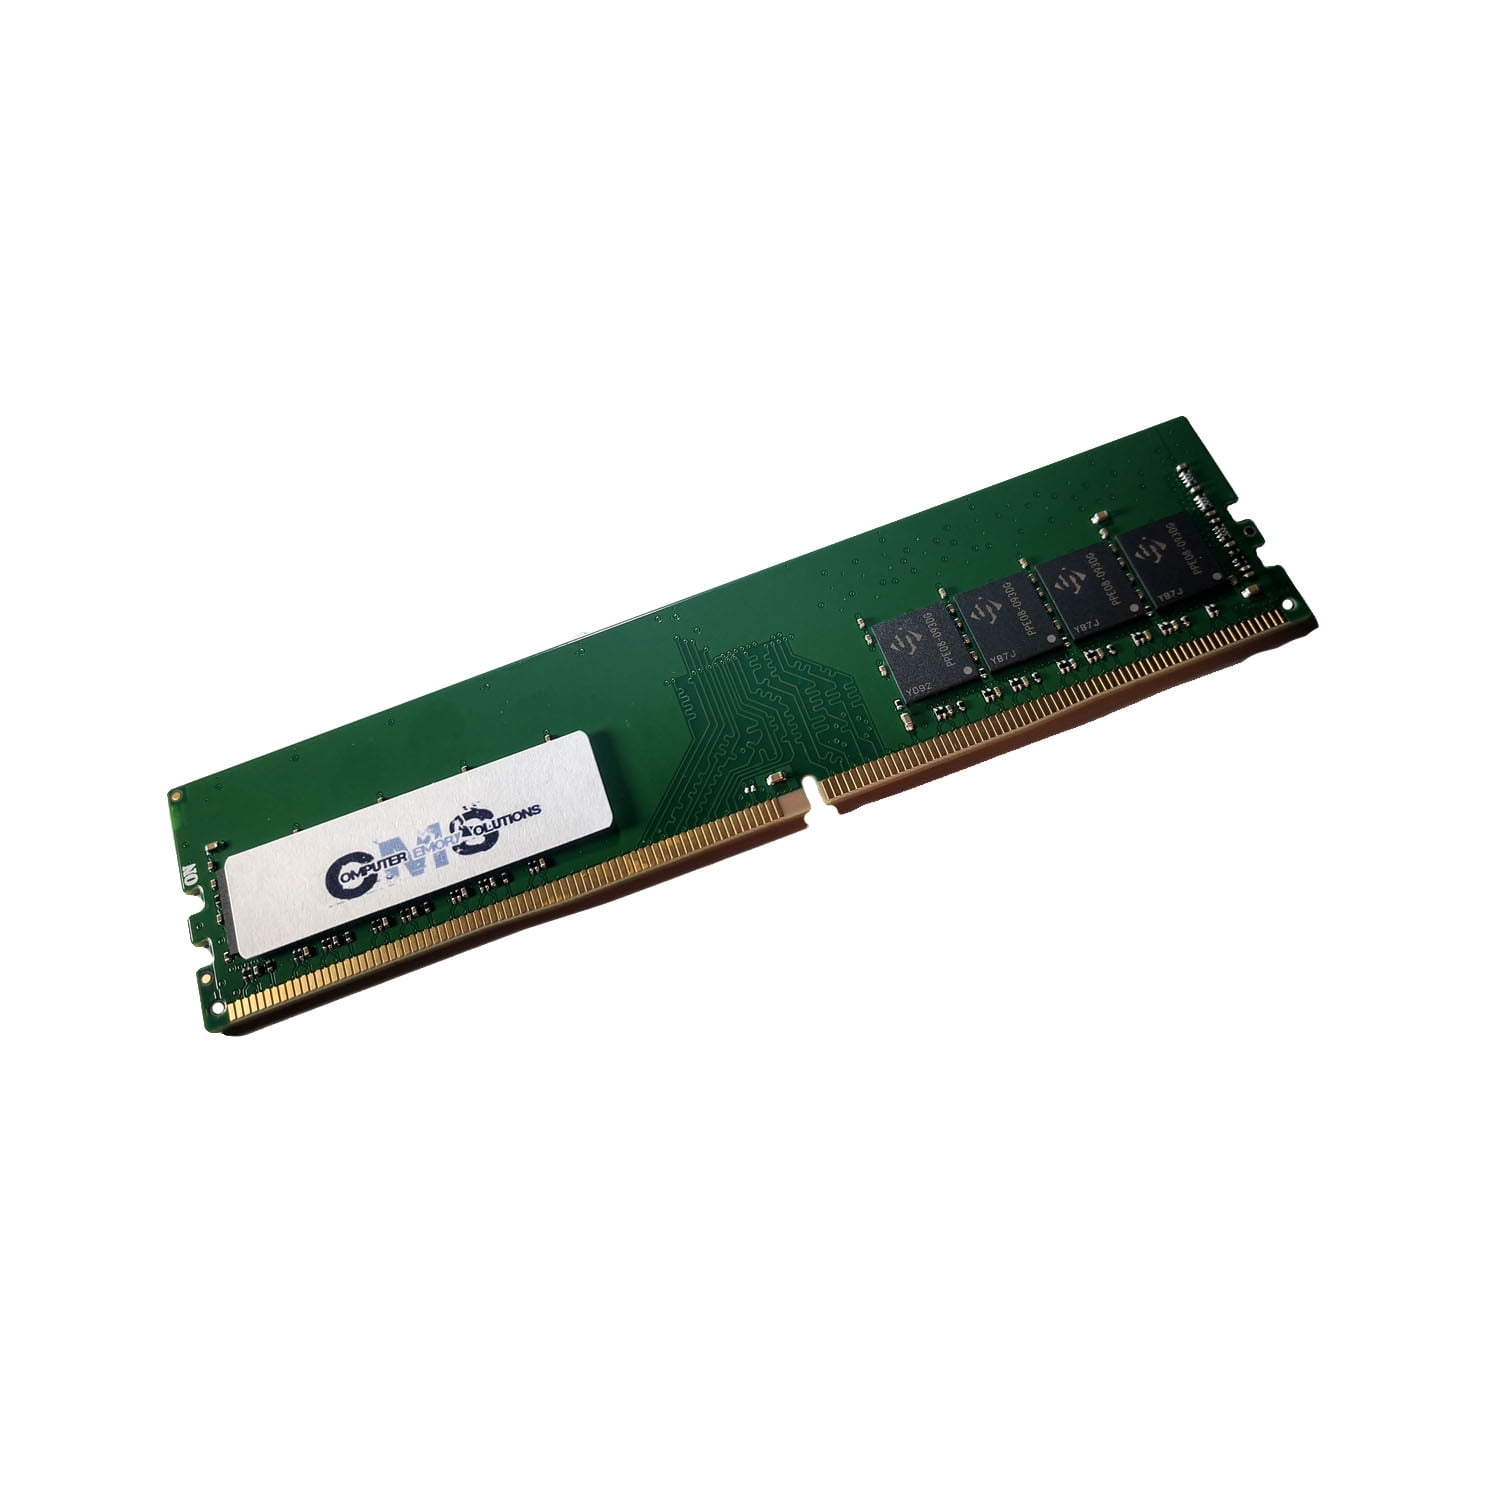 A-Tech 32GB (2x16GB) RAM for GIGABYTE GA-Z170X-UD5 DDR4 2666MHz PC4-21300  Non ECC DIMM 1.2V Desktop Memory Upgrade Kit並行輸入 通販 